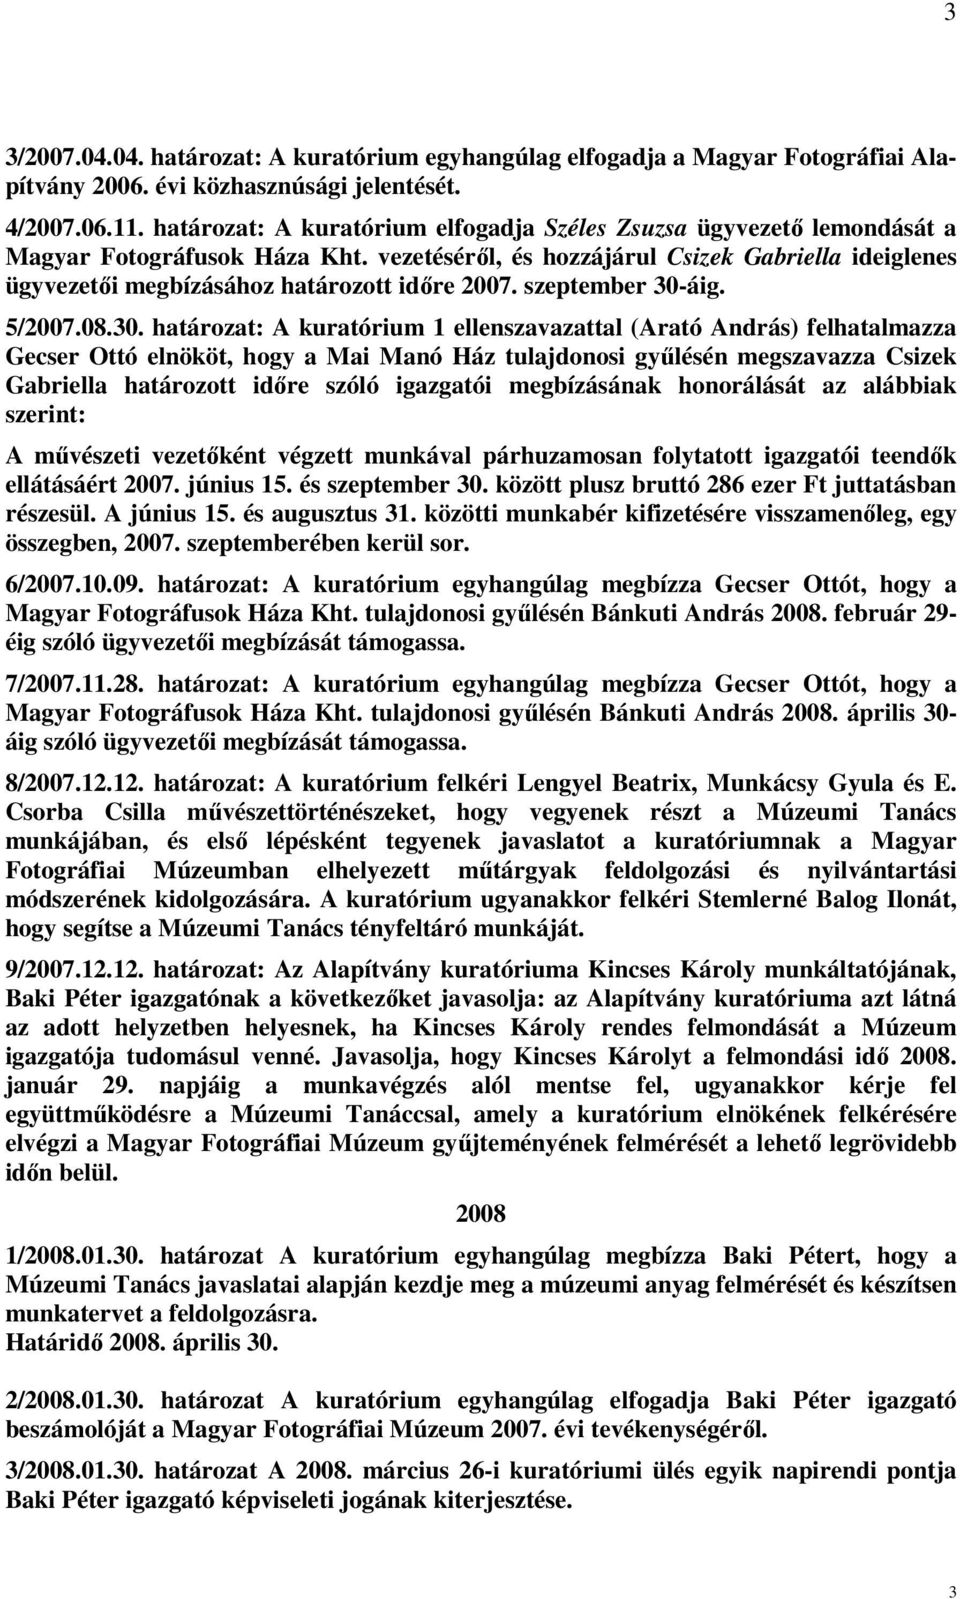 vezetéséről, és hozzájárul Csizek Gabriella ideiglenes ügyvezetői megbízásához határozott időre 2007. szeptember 30-